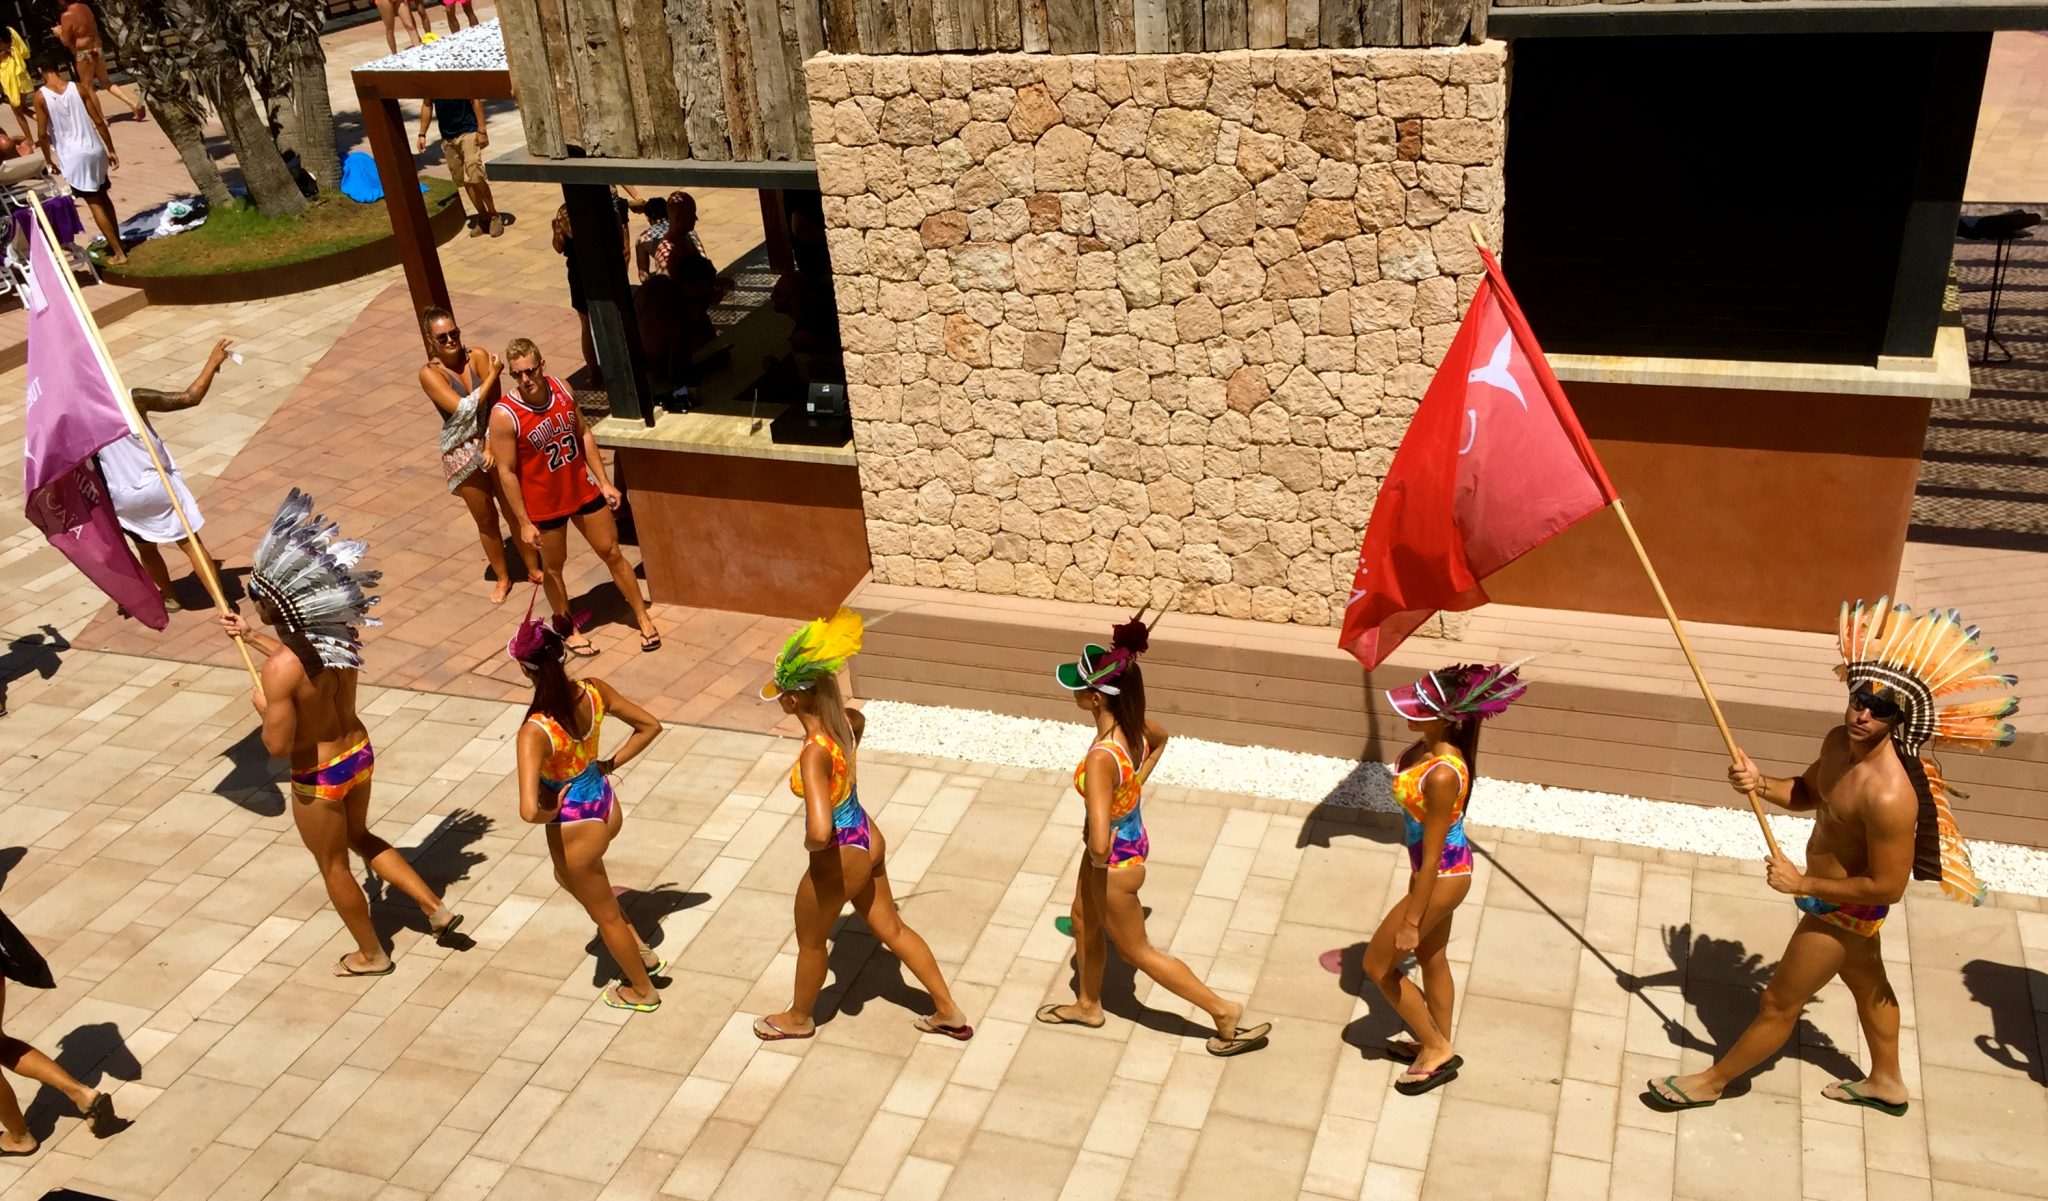 A party parade in Ibiza